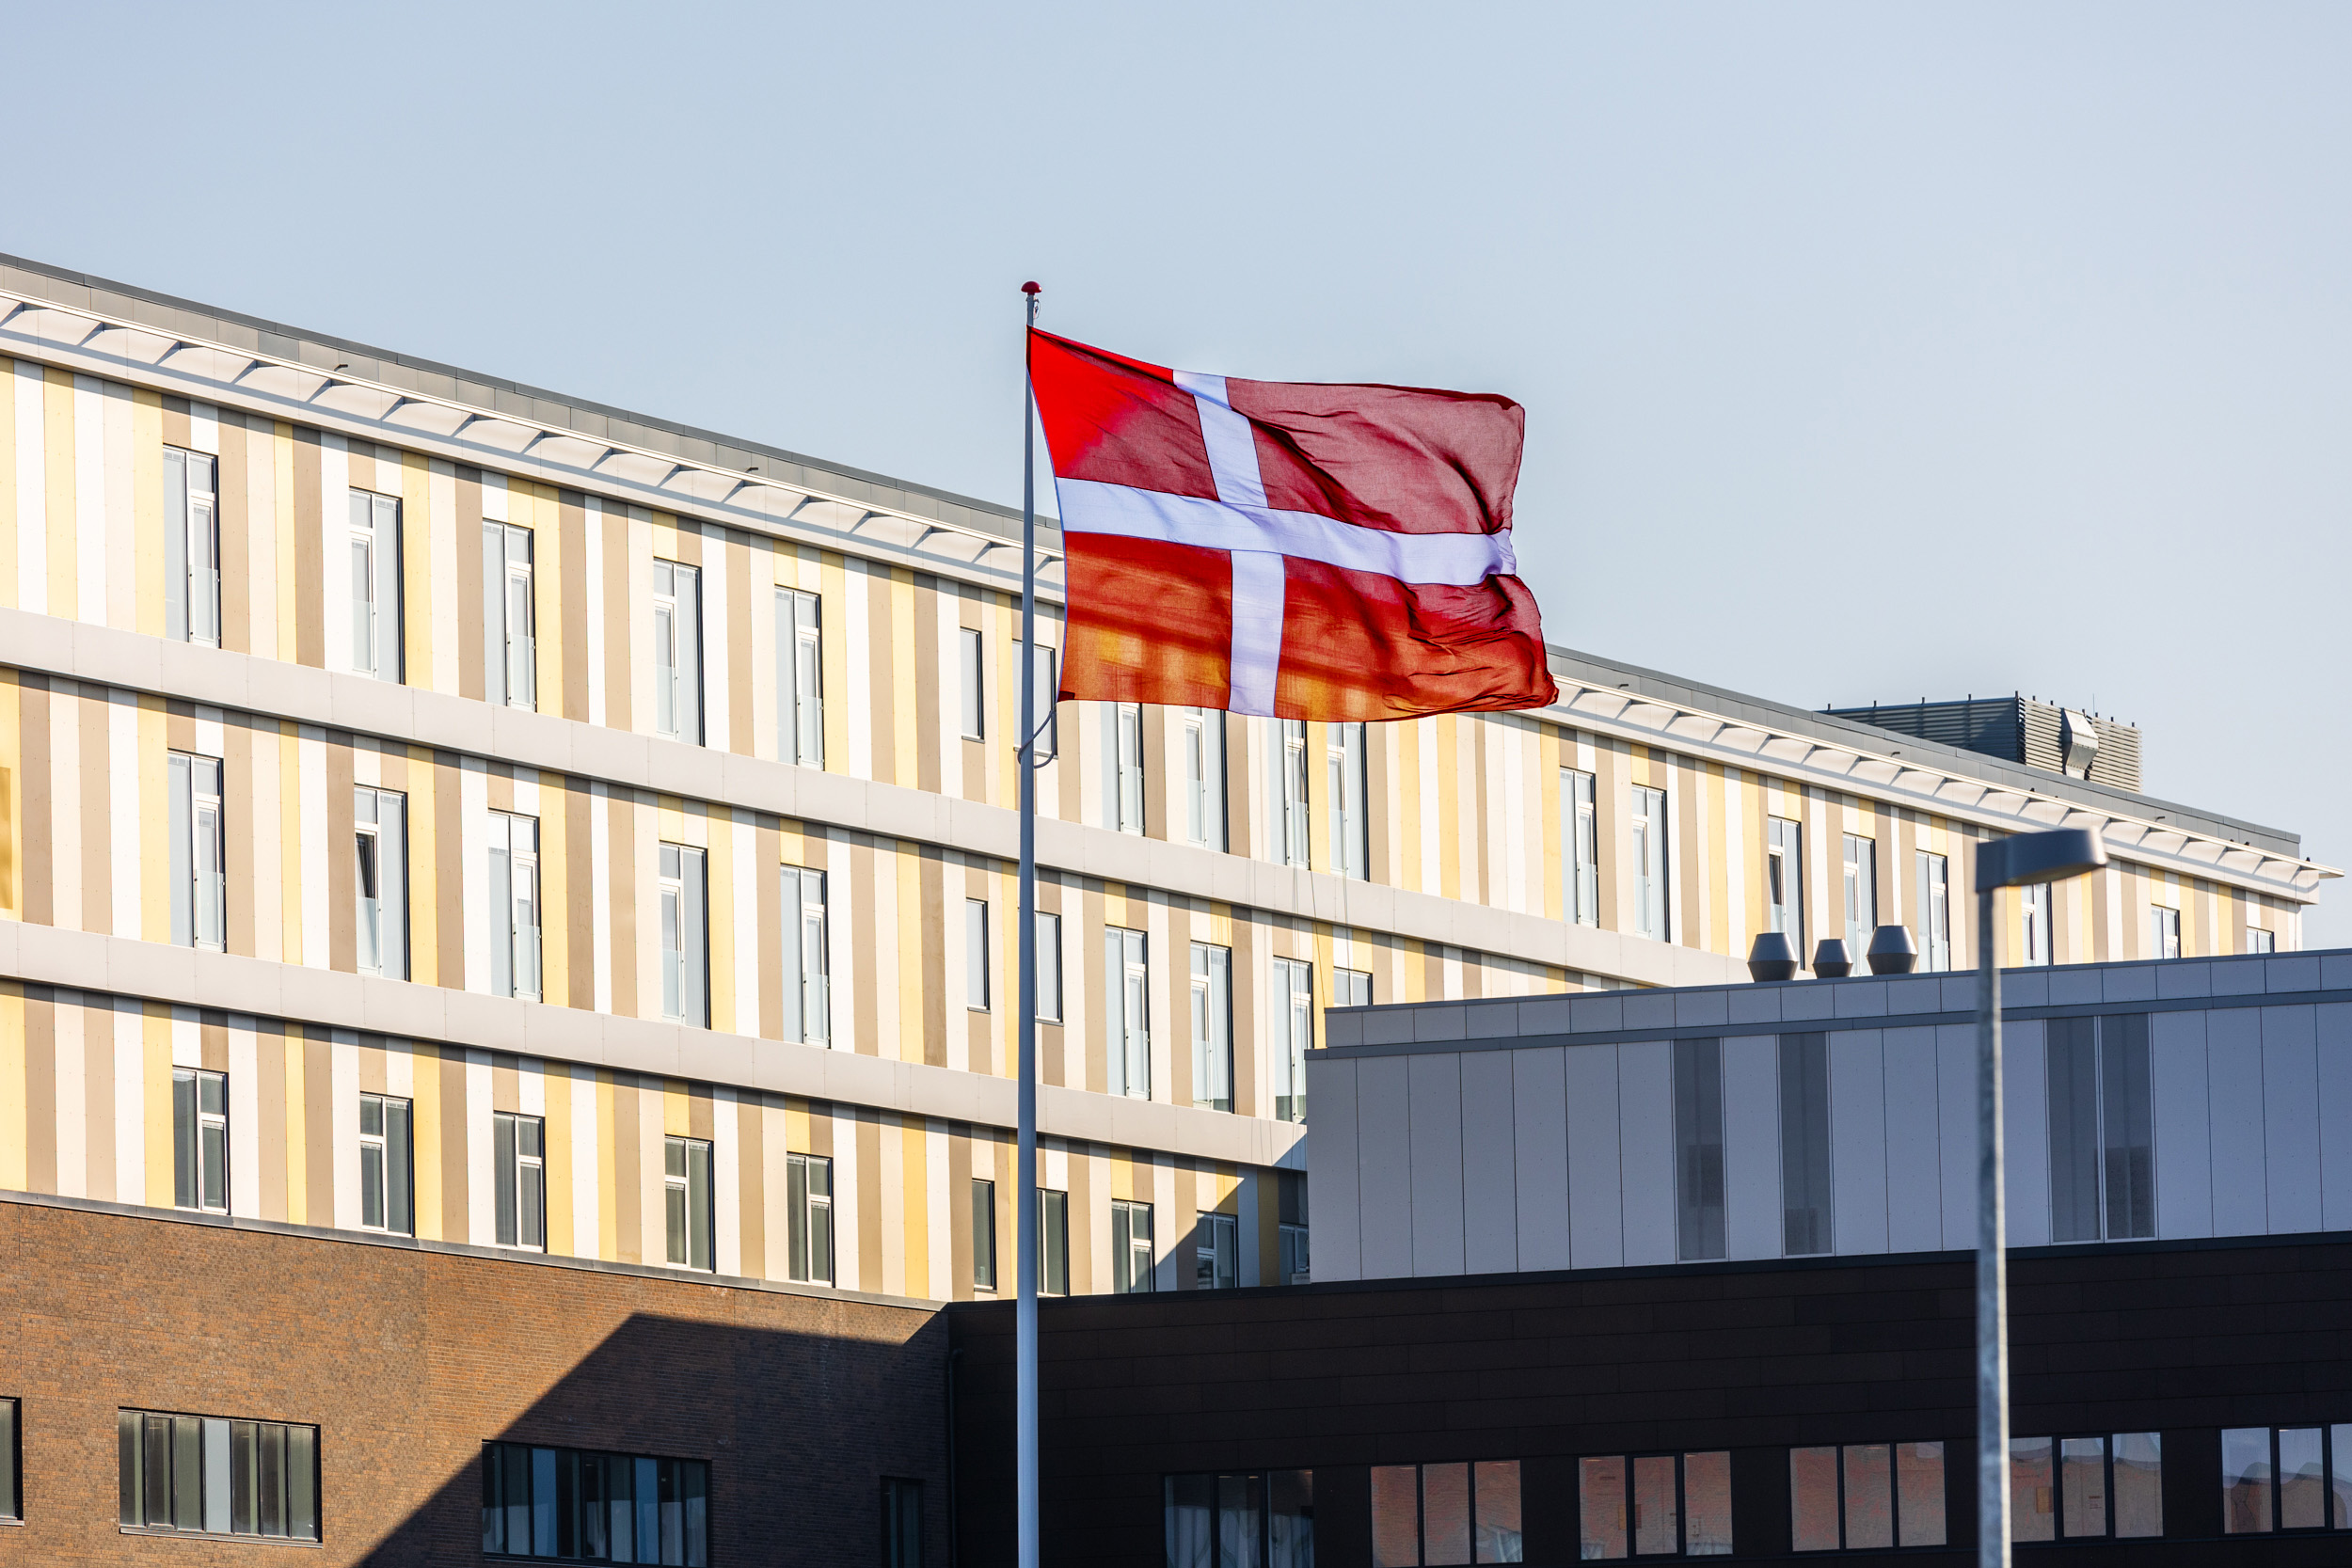 Et billede af en bygning, i forgrunden er der hejst et Dannebrog flag